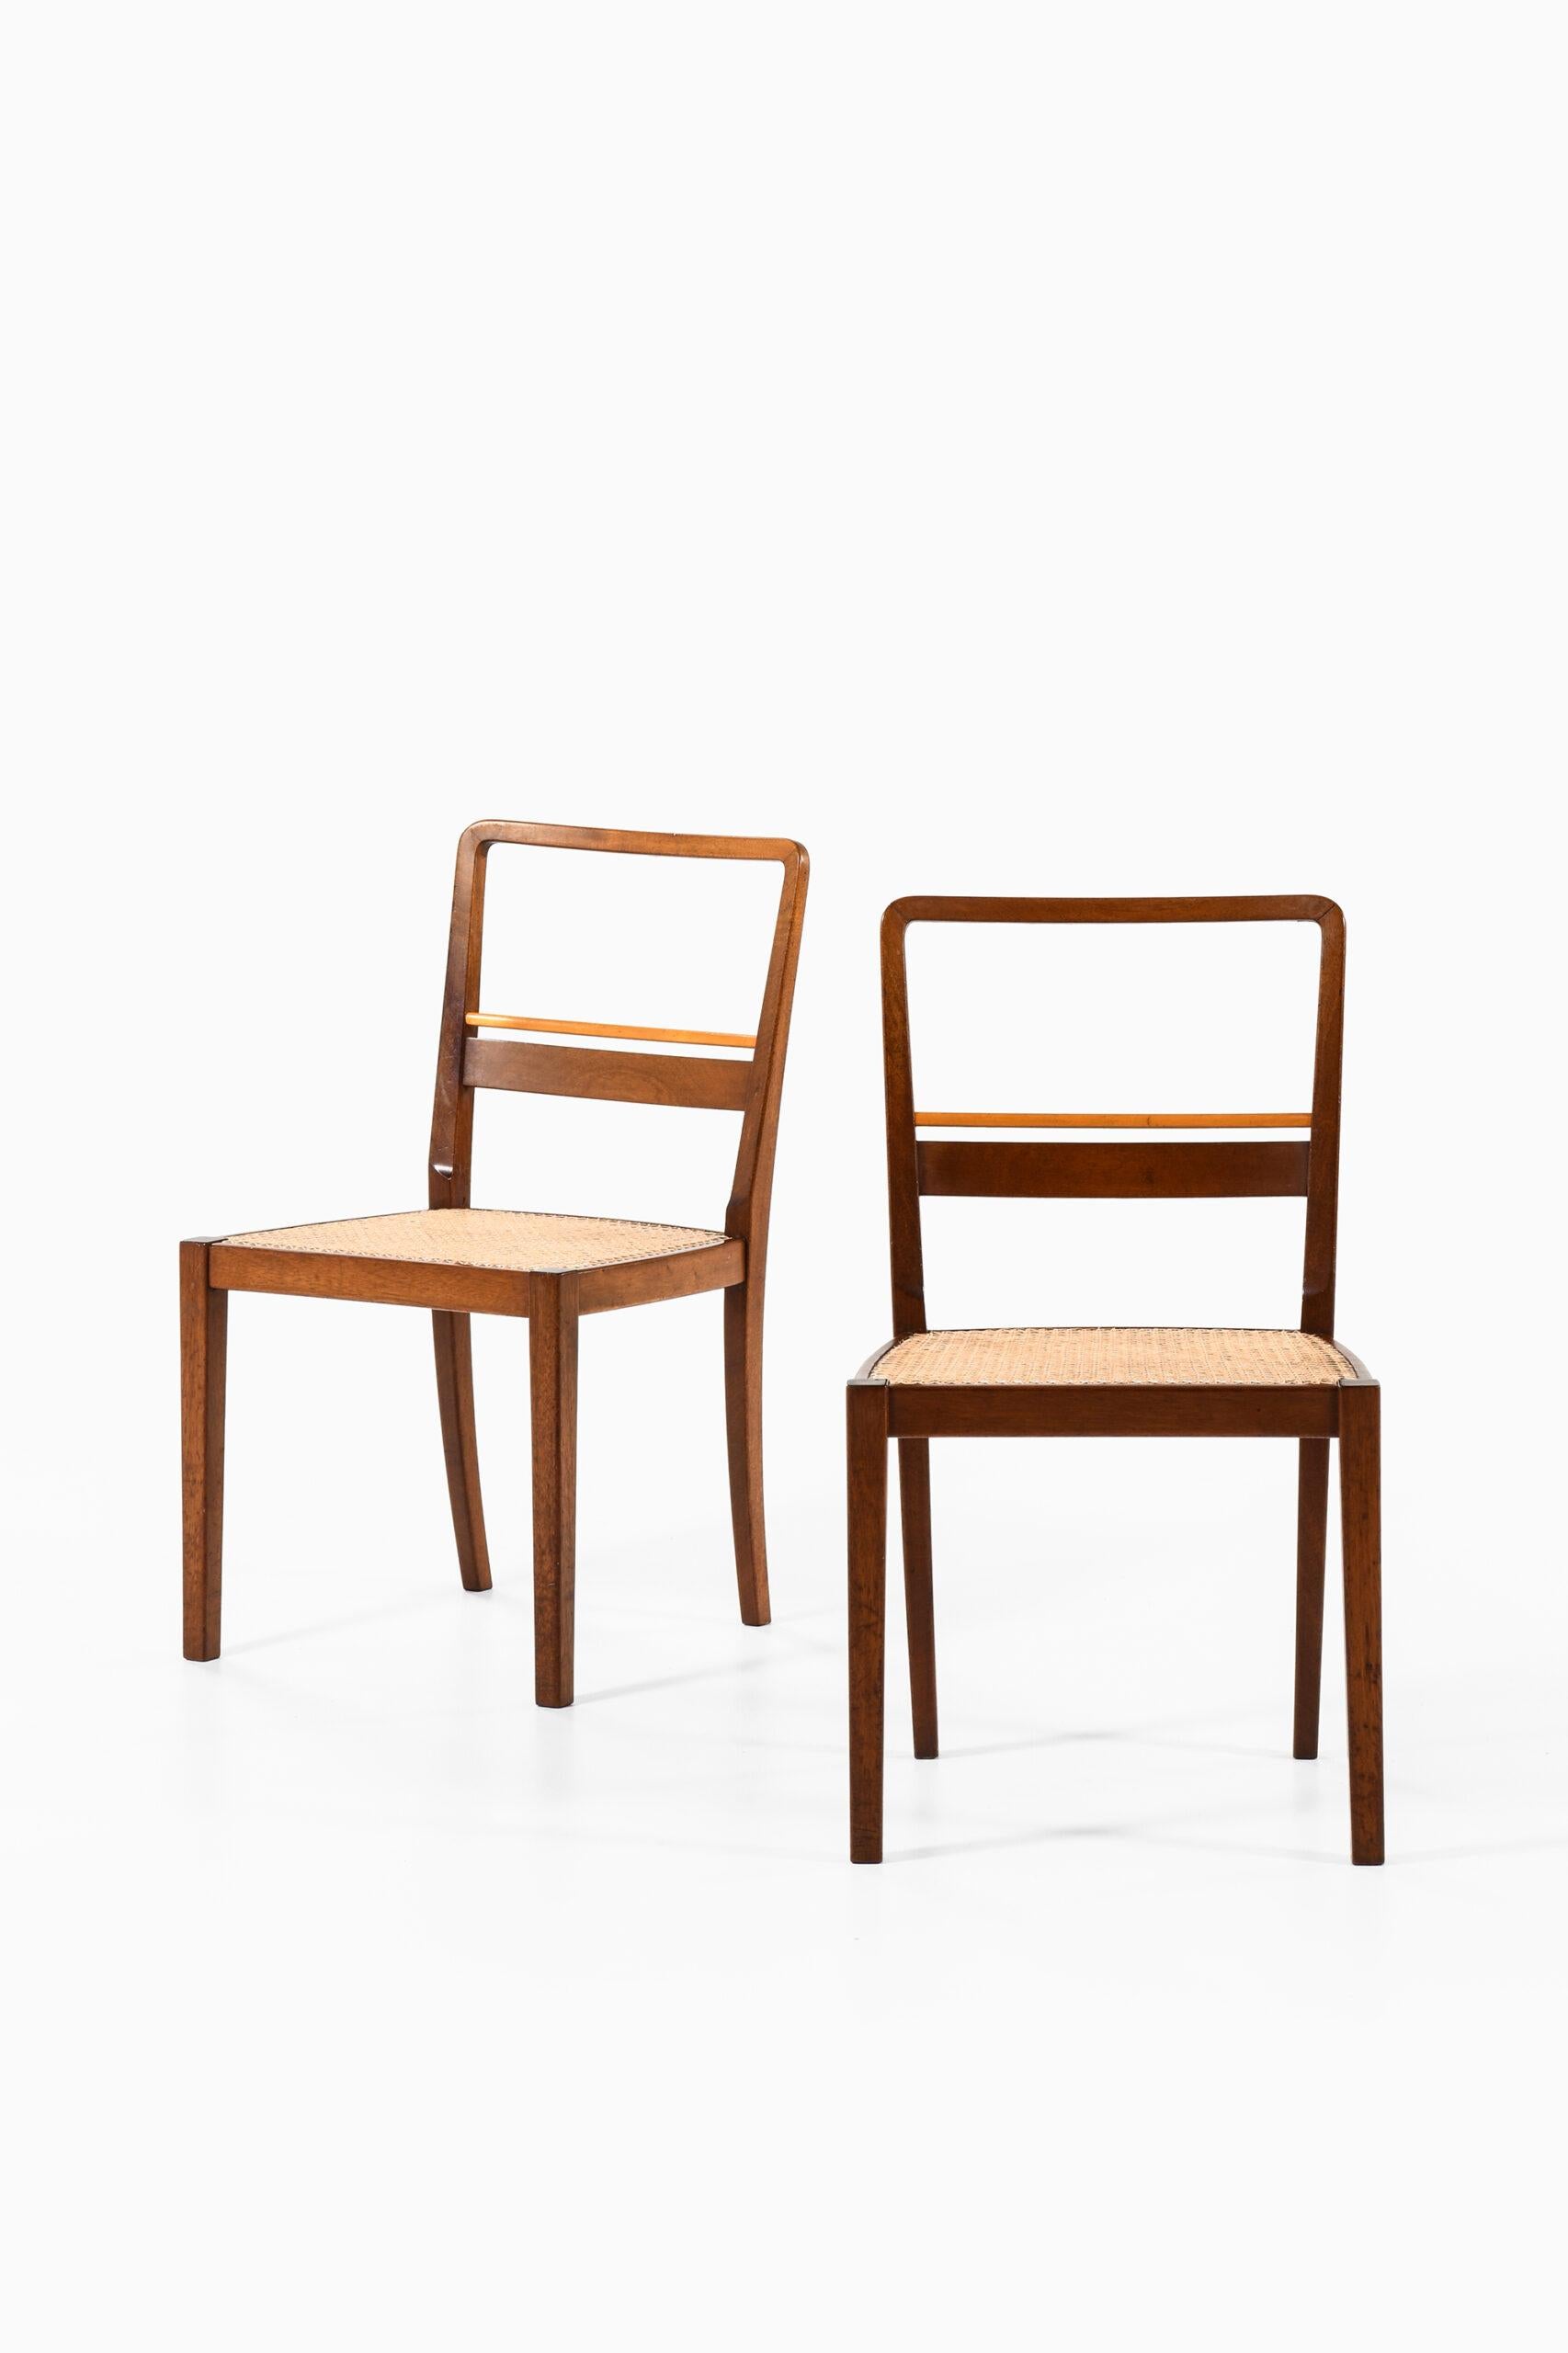 Seltener Satz von 6 Esszimmerstühlen, entworfen von Erik Chambert. Produziert von AB Chamberts Möbelfabrik in Norrköping, Schweden.